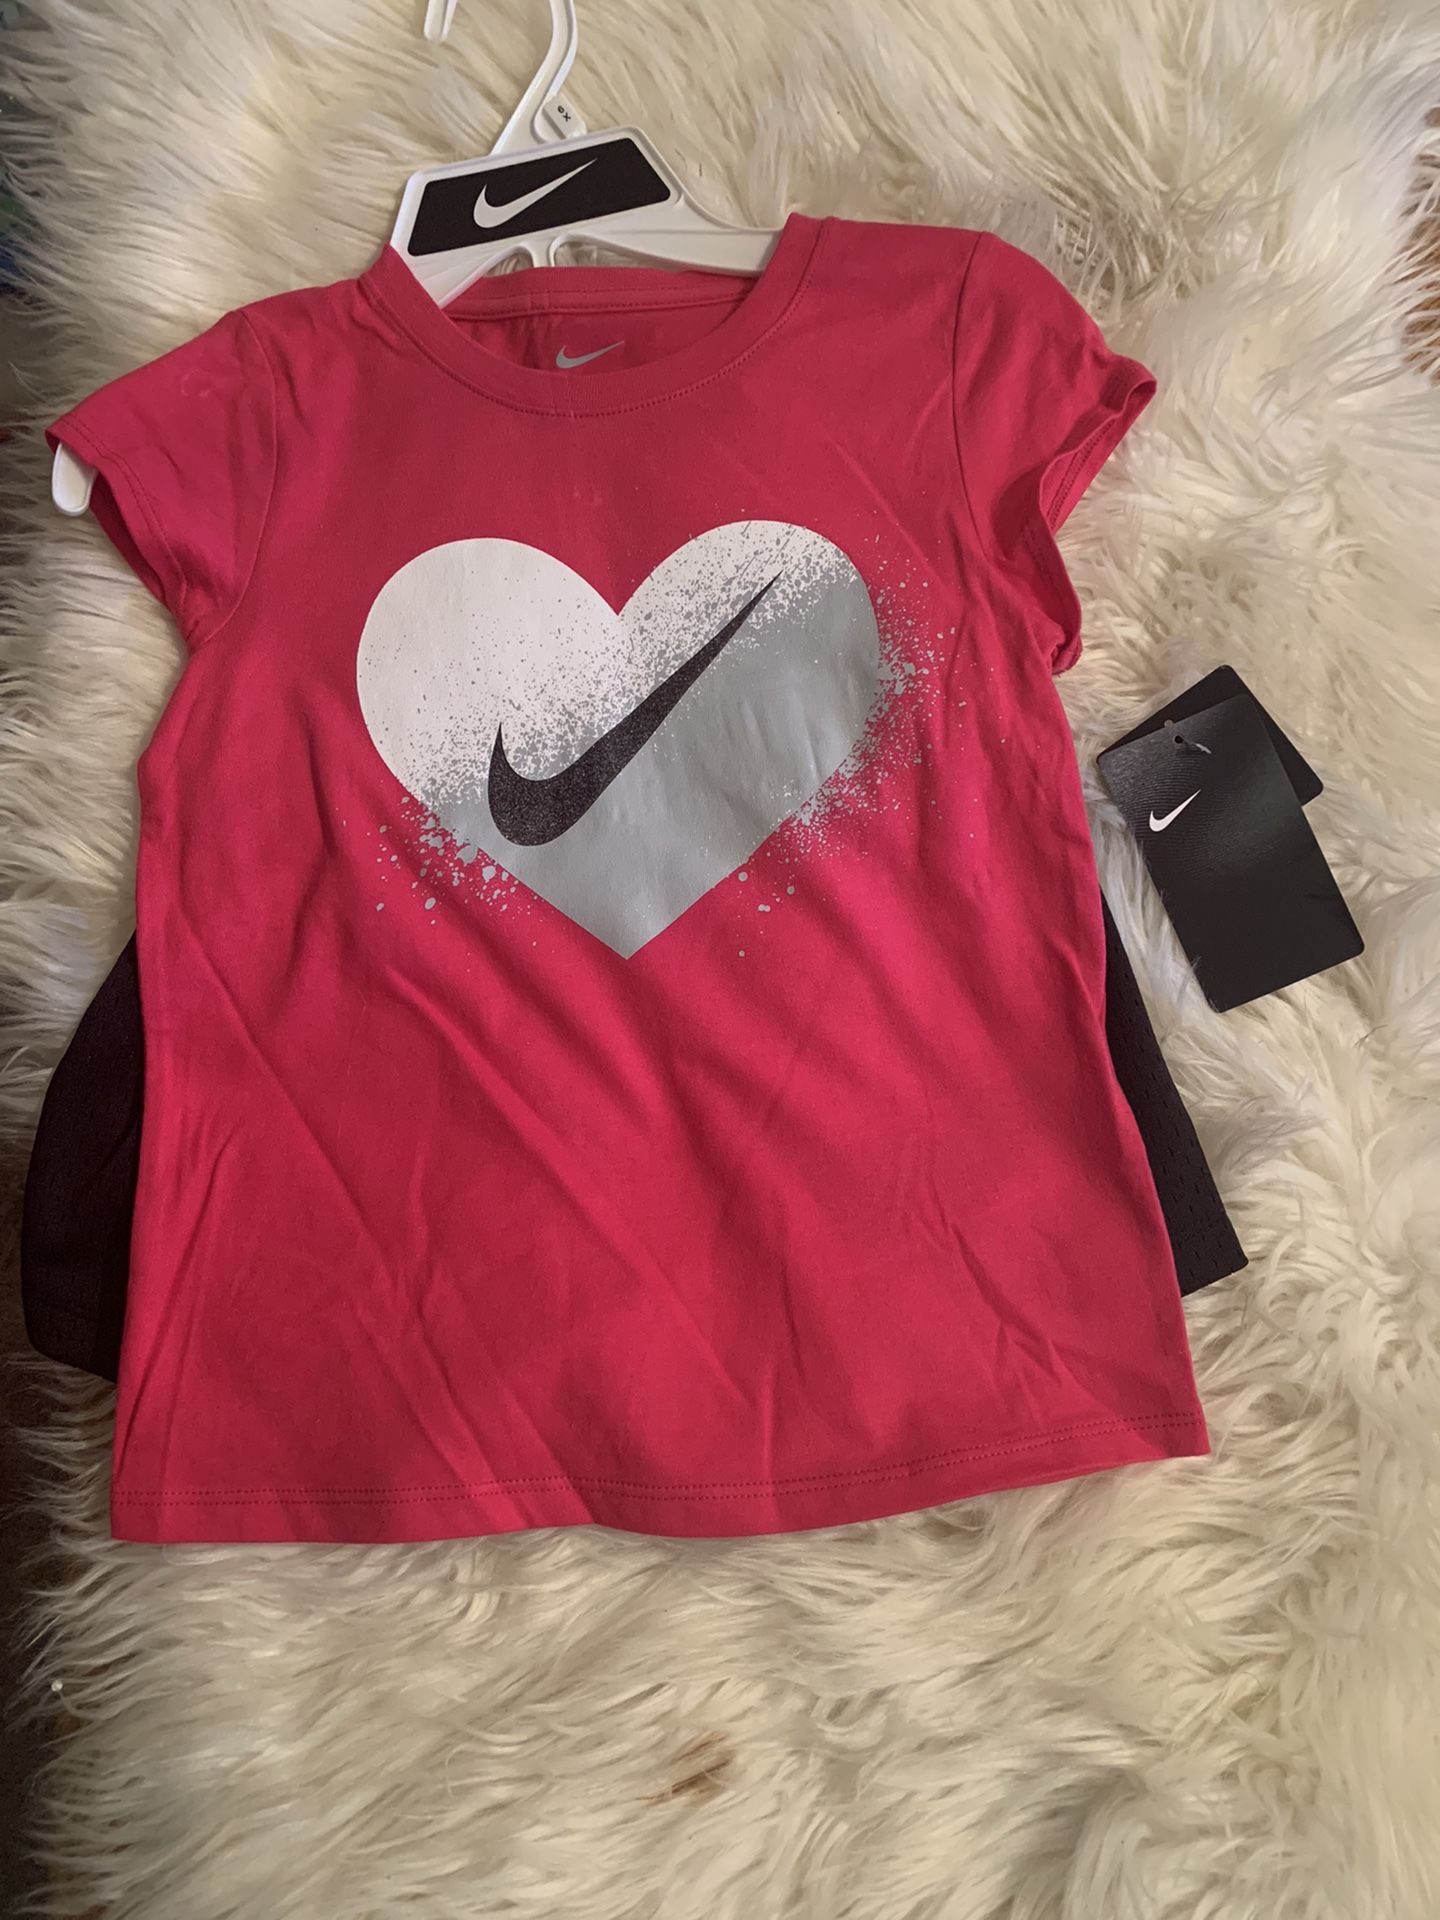 Girls Nike Shirt Set